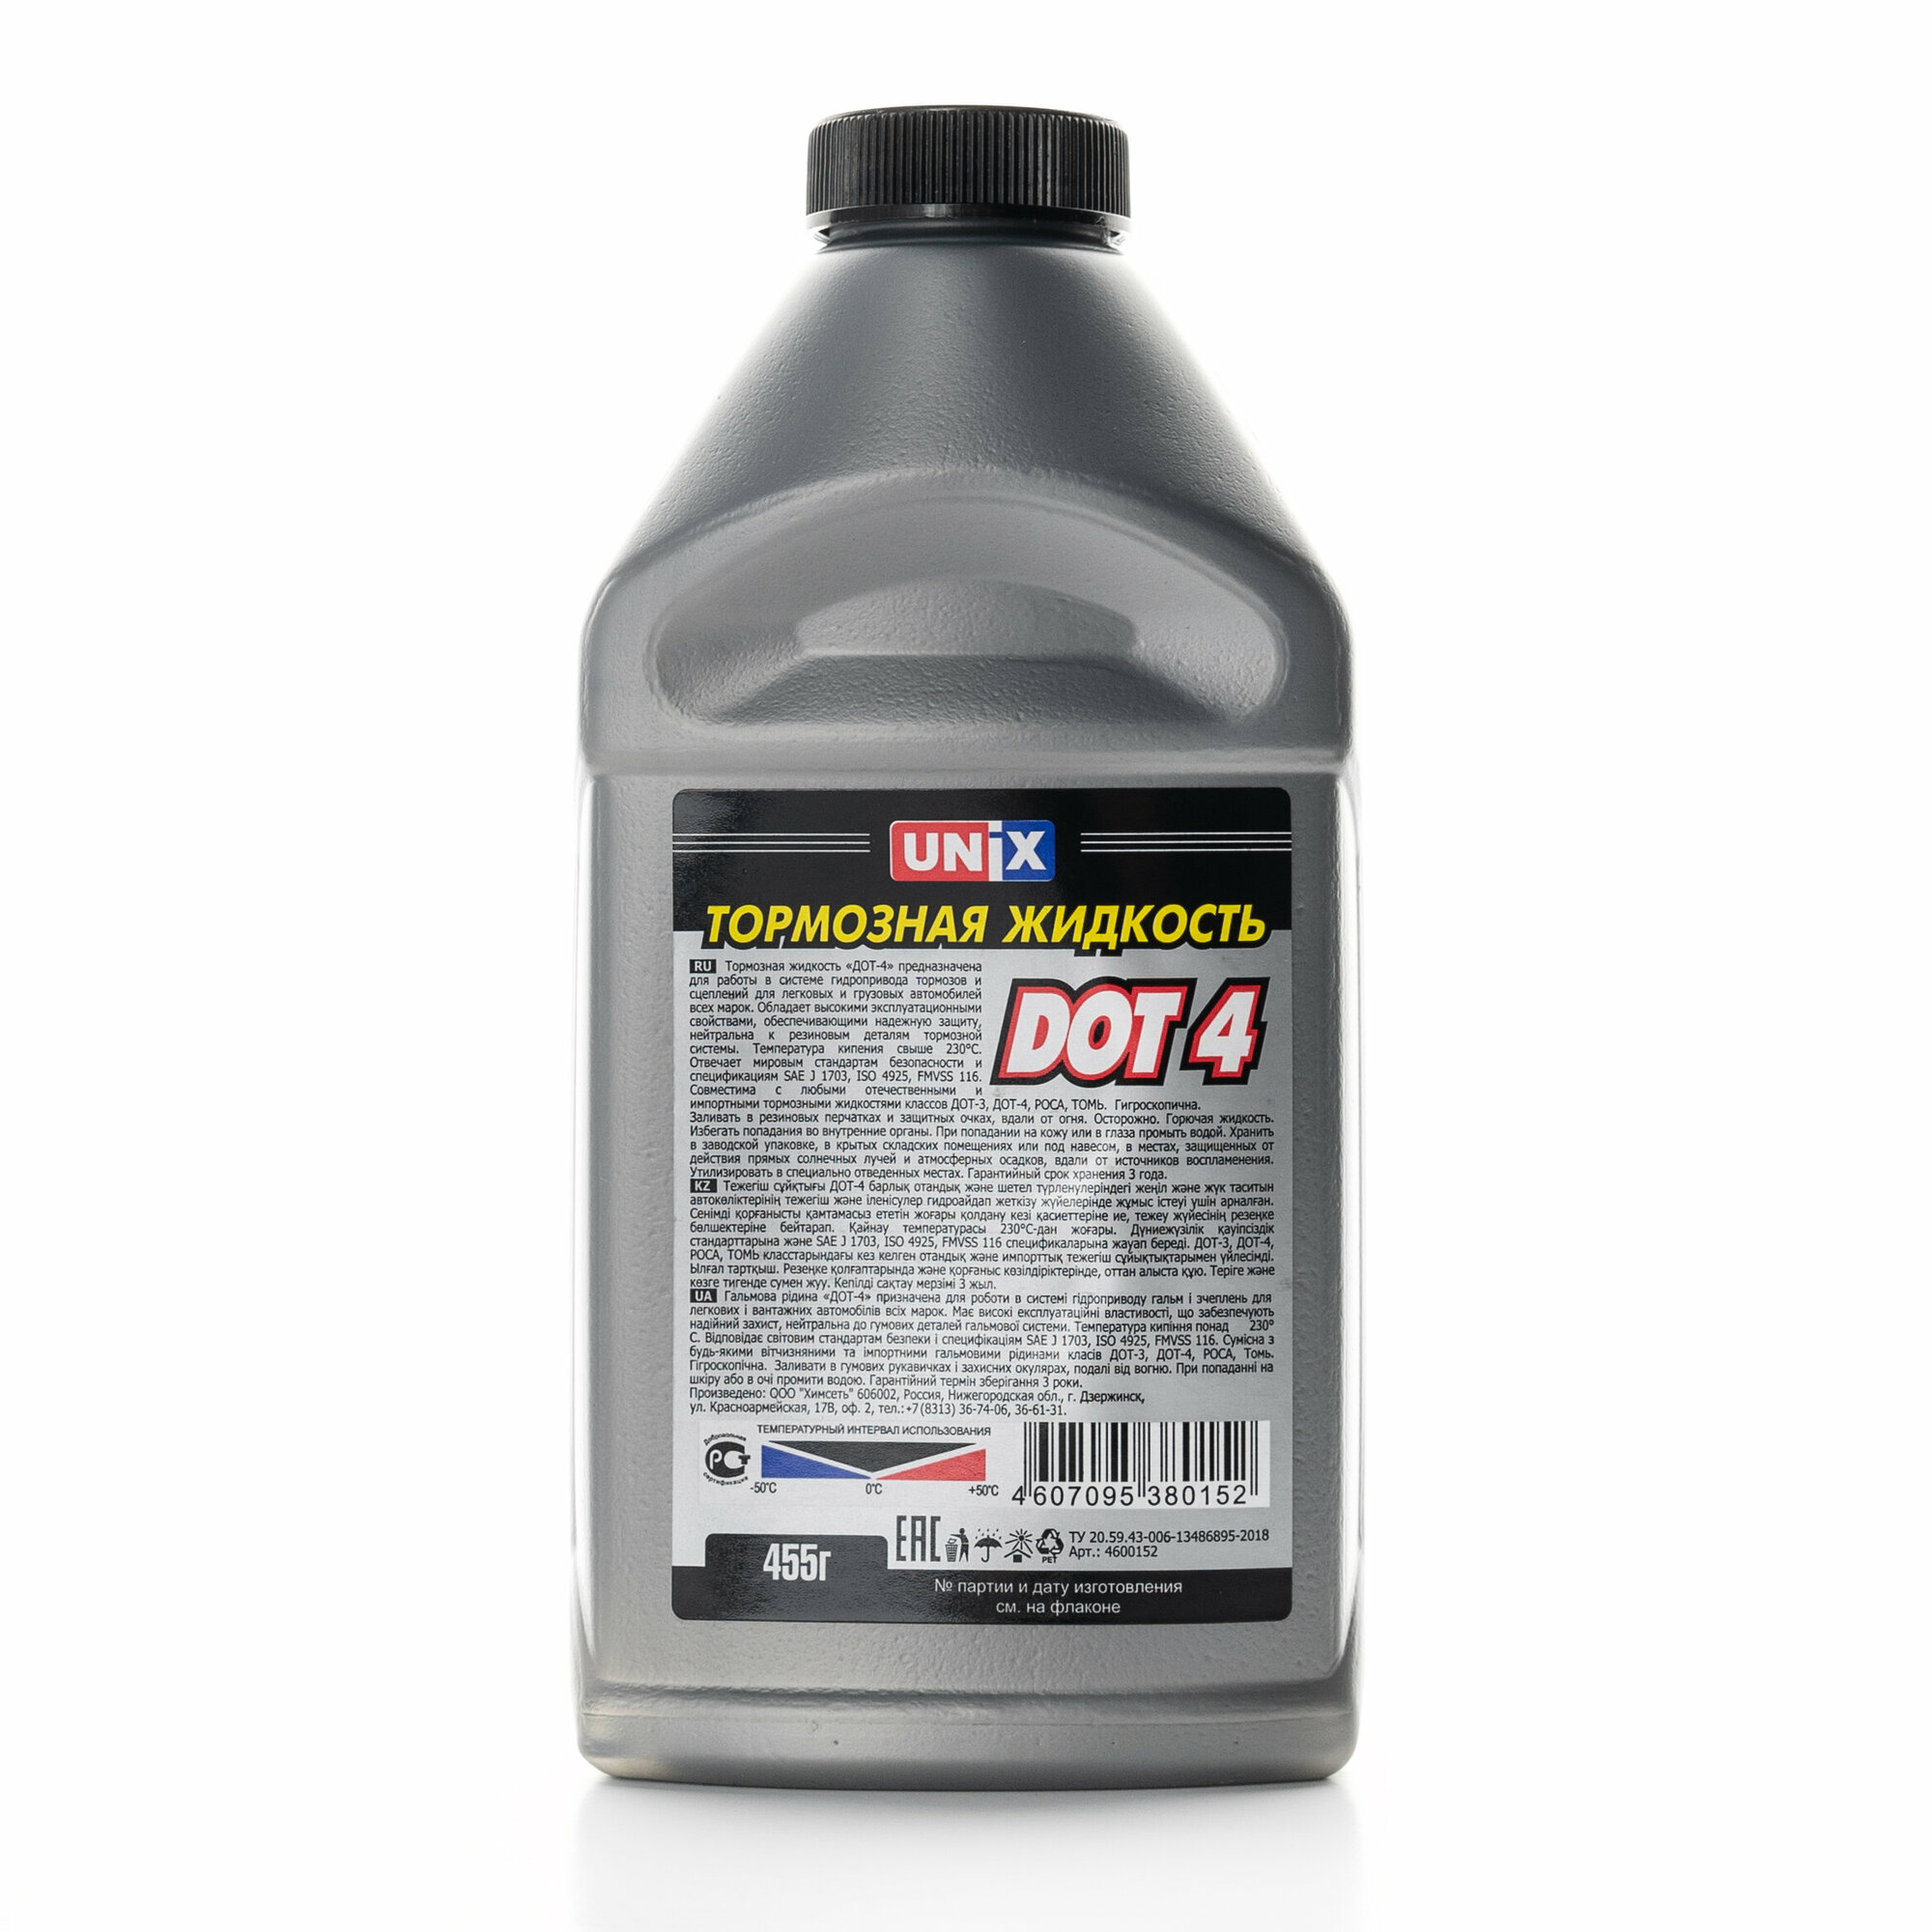 Жидкость тормозная DOT-4 (UNIX) 455г